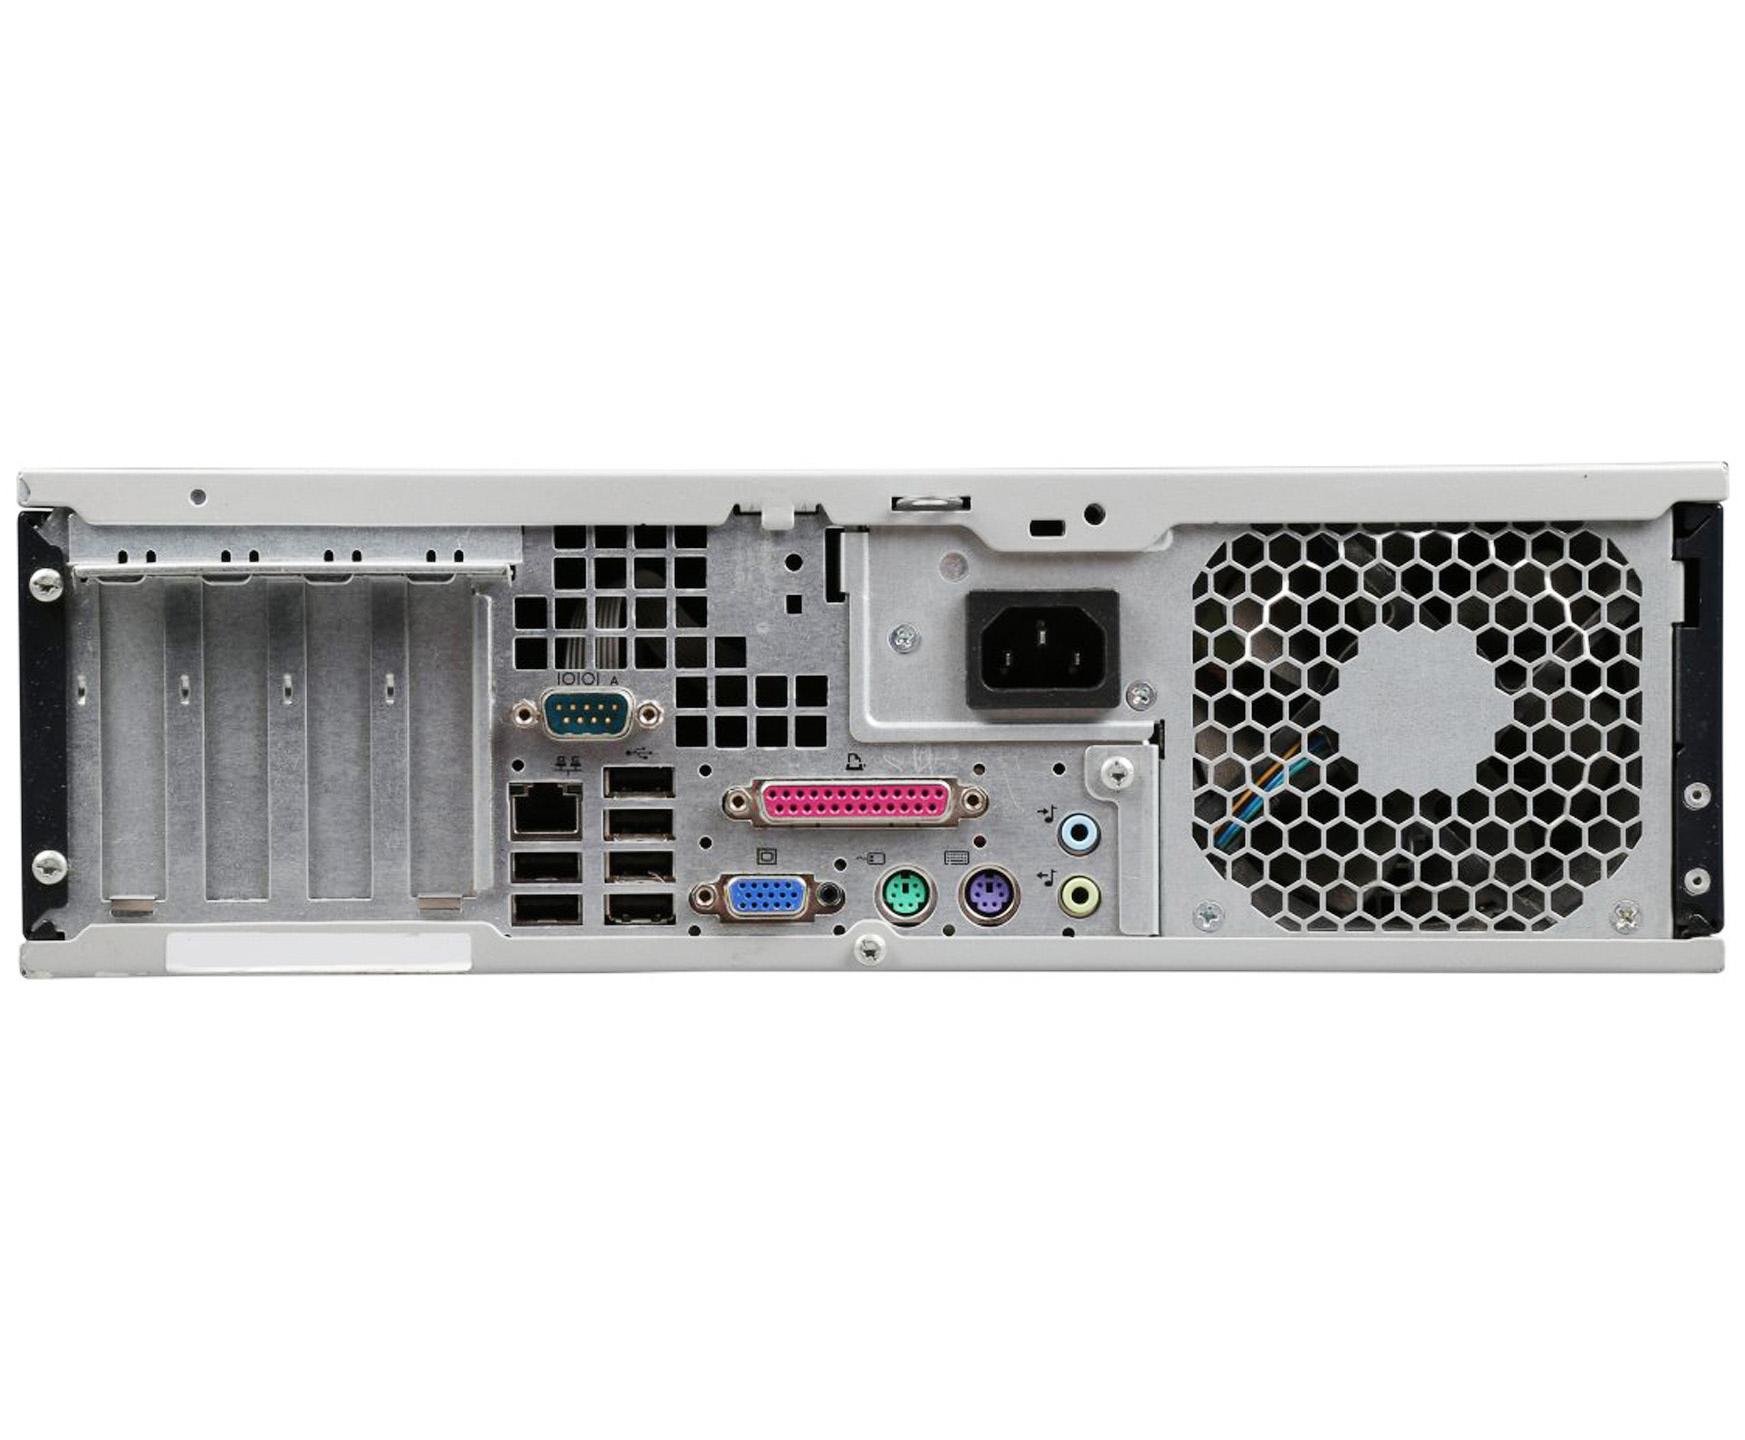 HP Compaq Dc7800 SFF